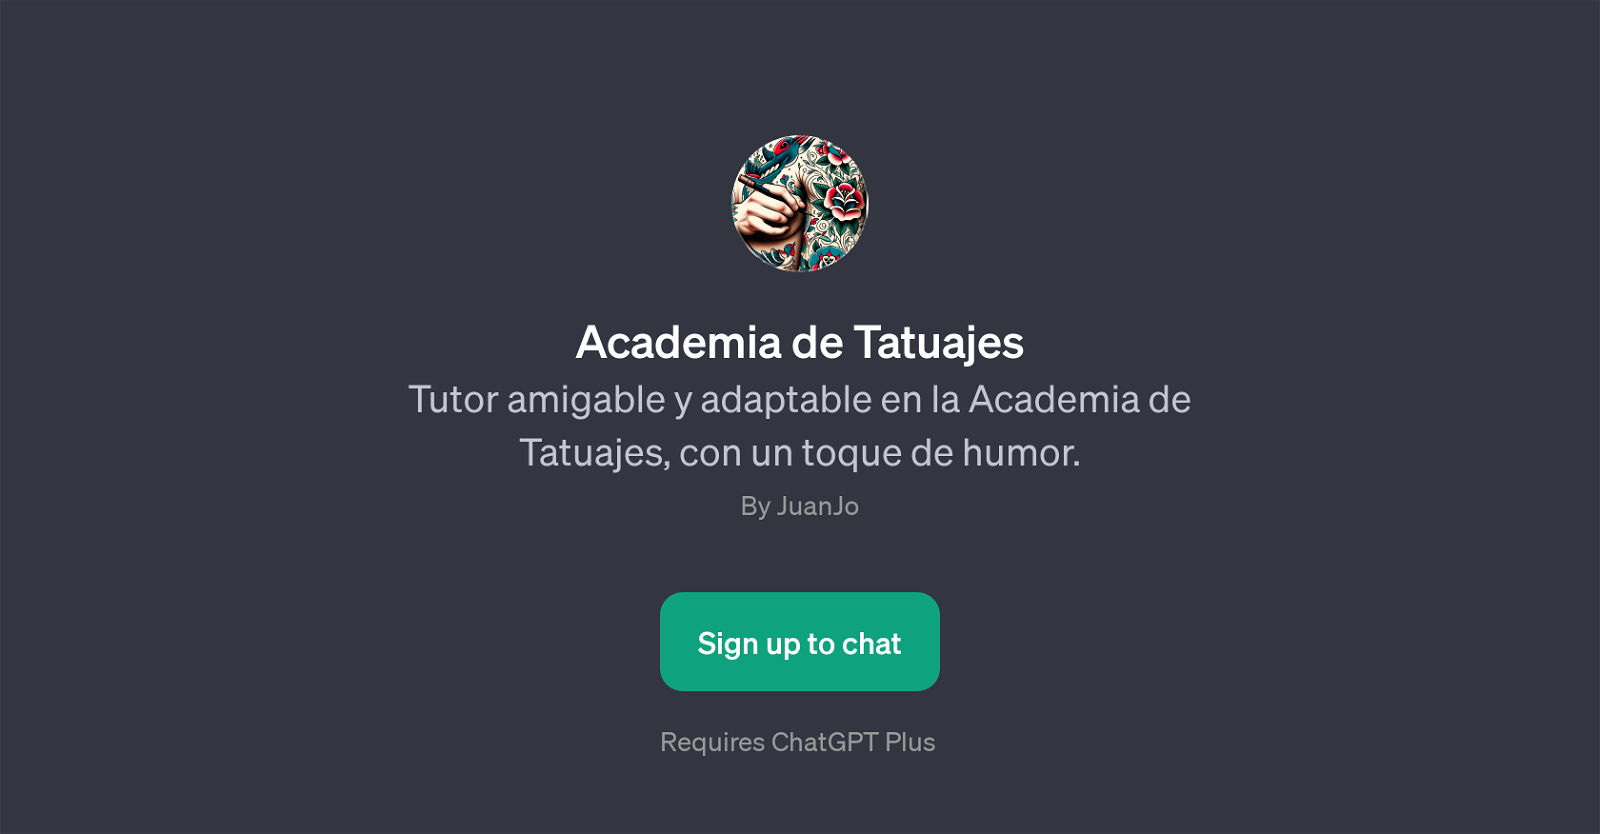 Academia de Tatuajes website